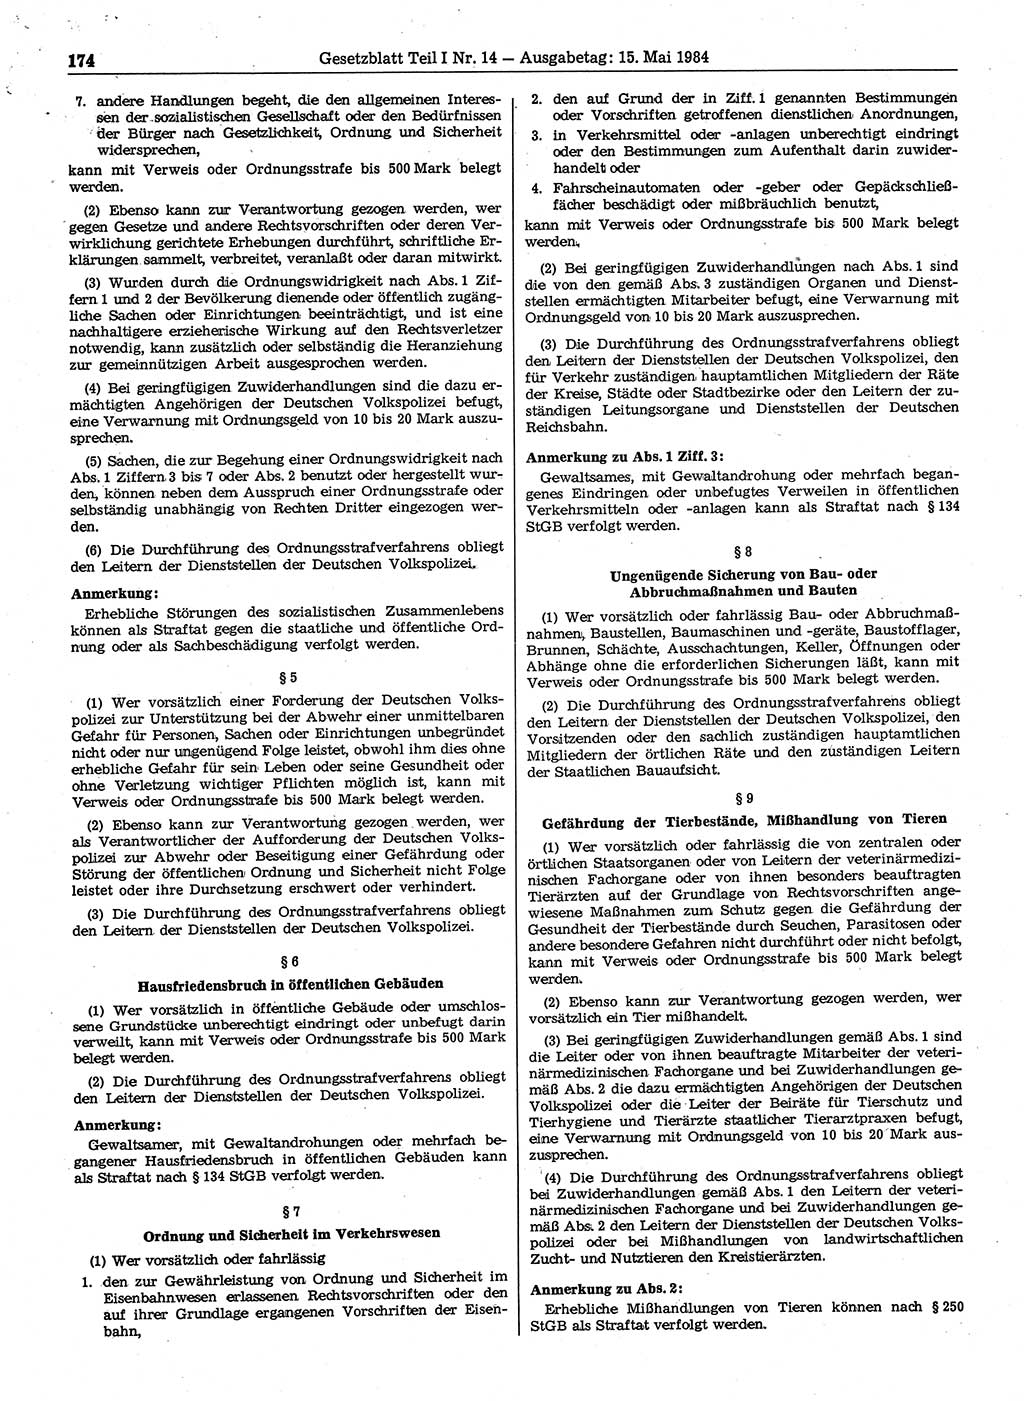 Gesetzblatt (GBl.) der Deutschen Demokratischen Republik (DDR) Teil Ⅰ 1984, Seite 174 (GBl. DDR Ⅰ 1984, S. 174)